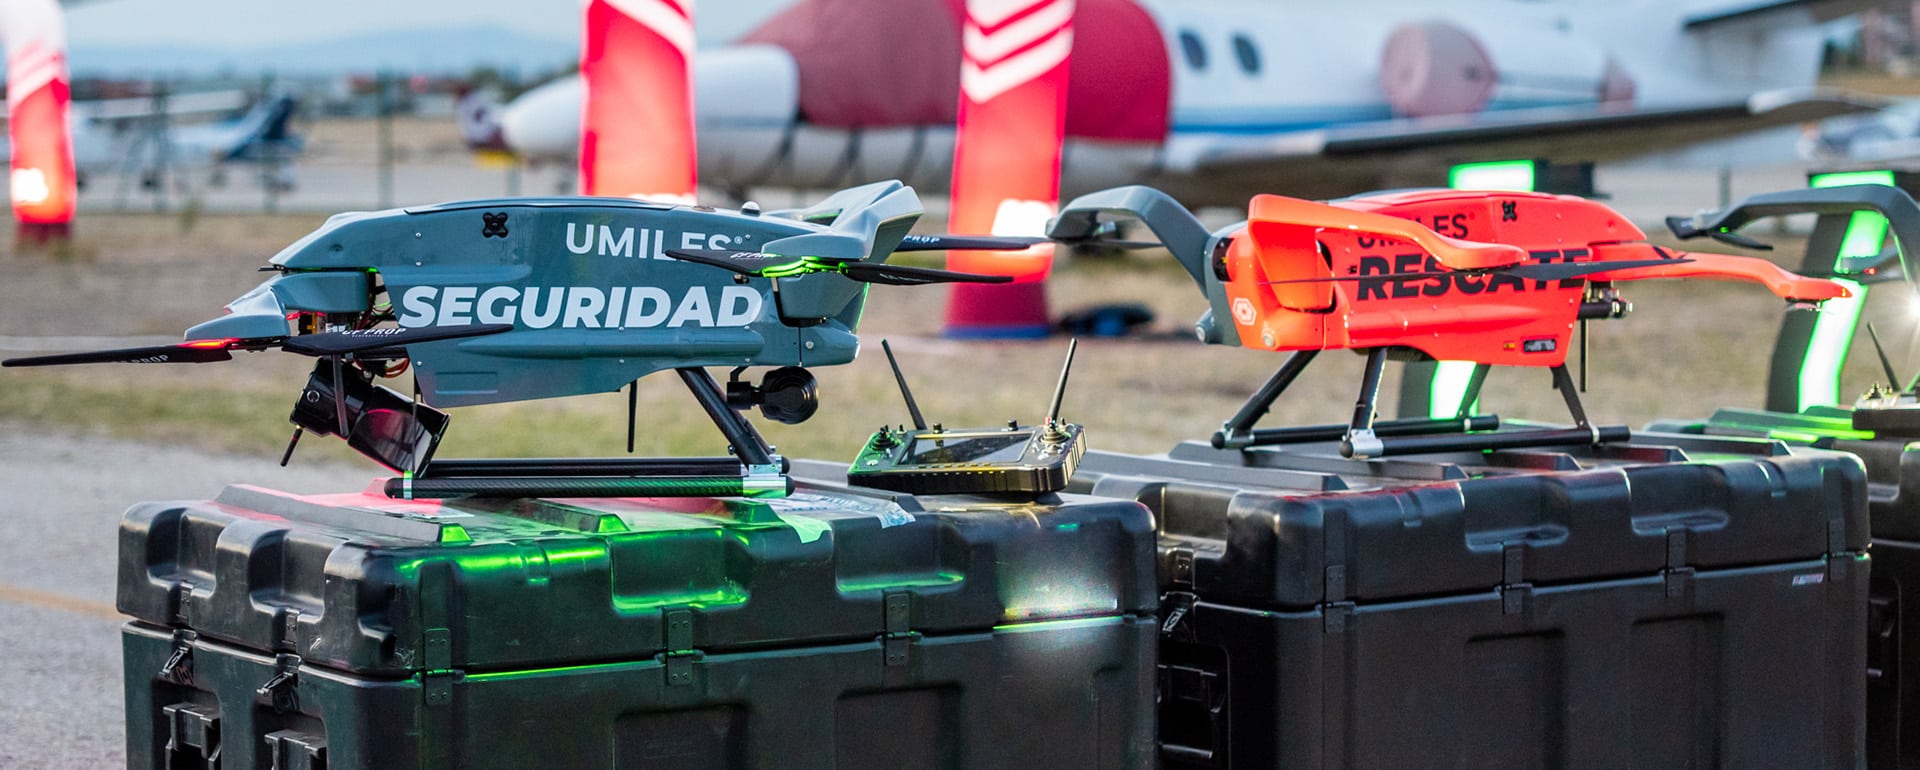 emergencias seguridad drones UMILES